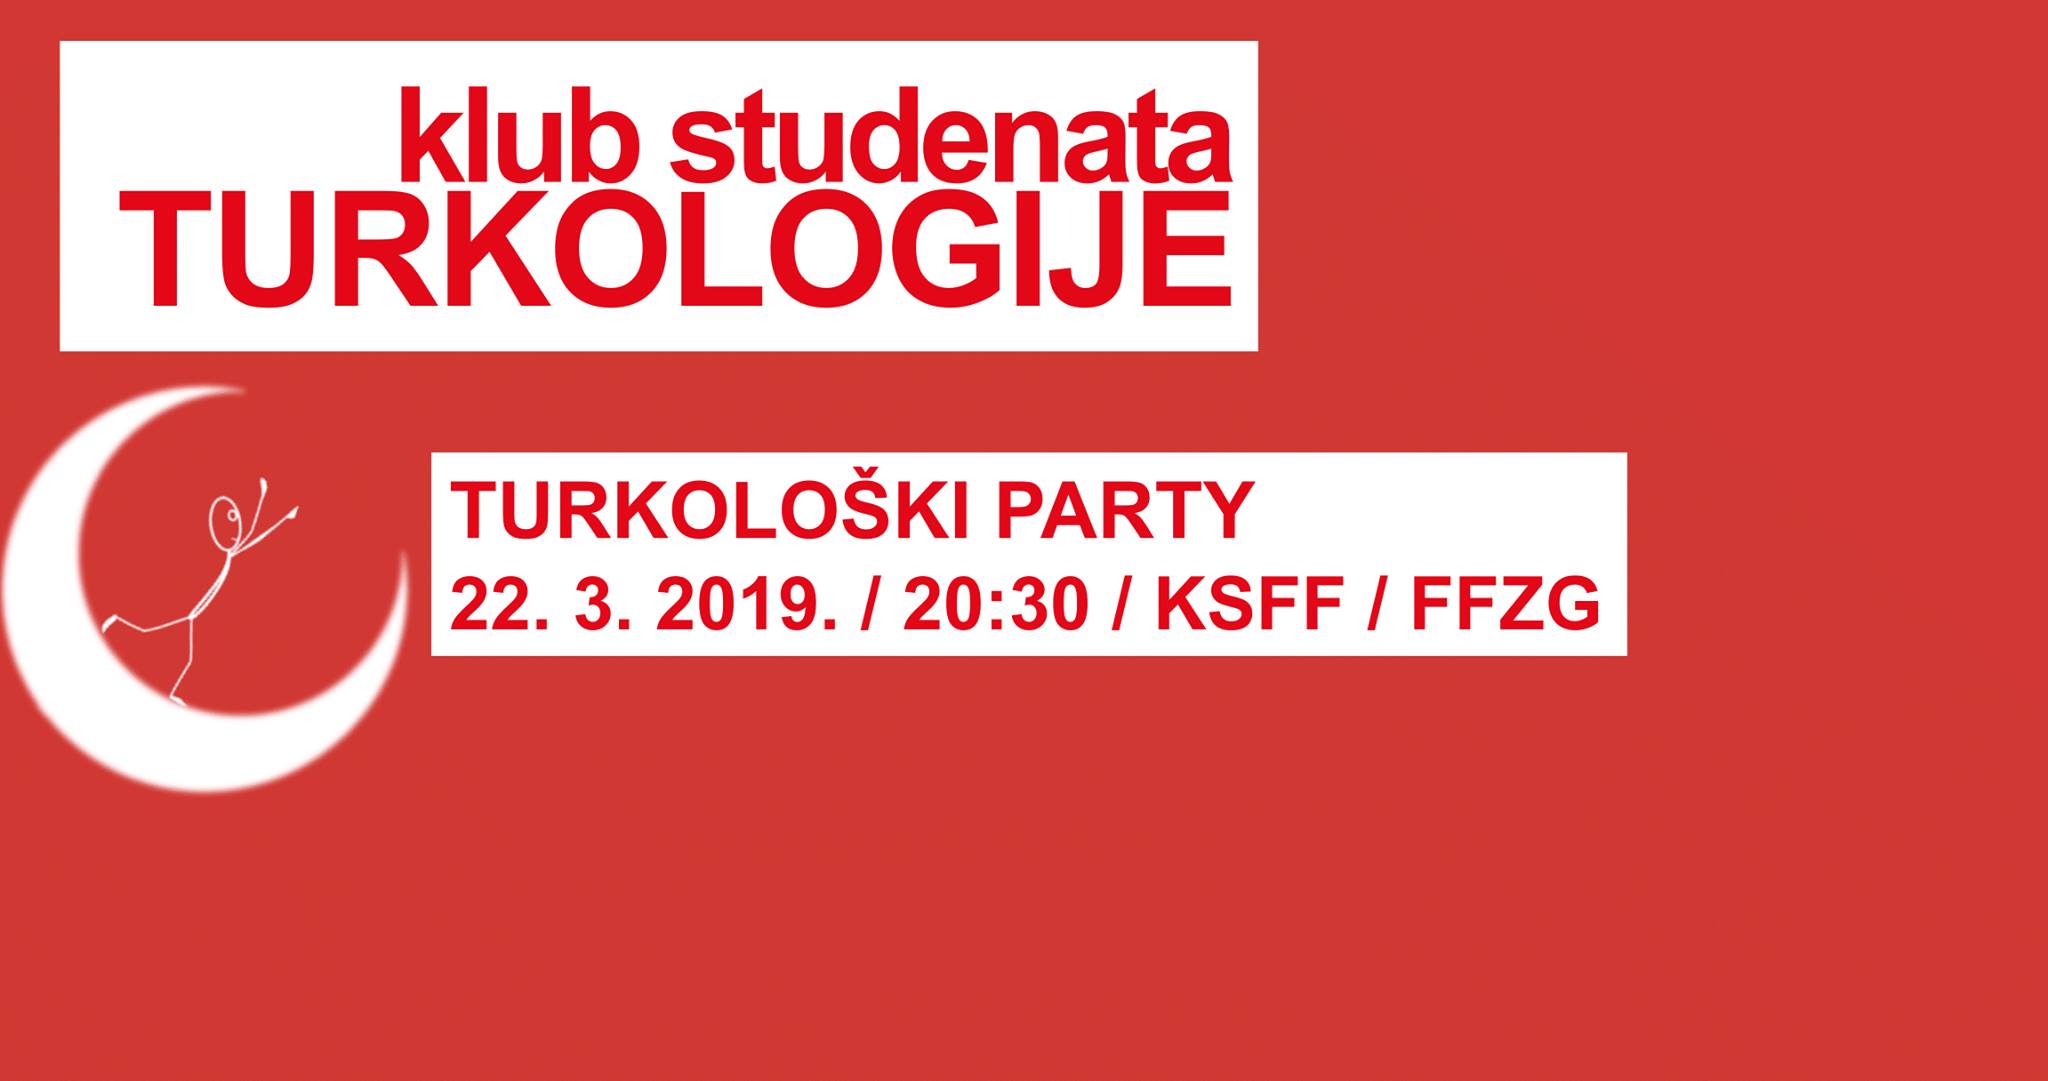 Turkološki party